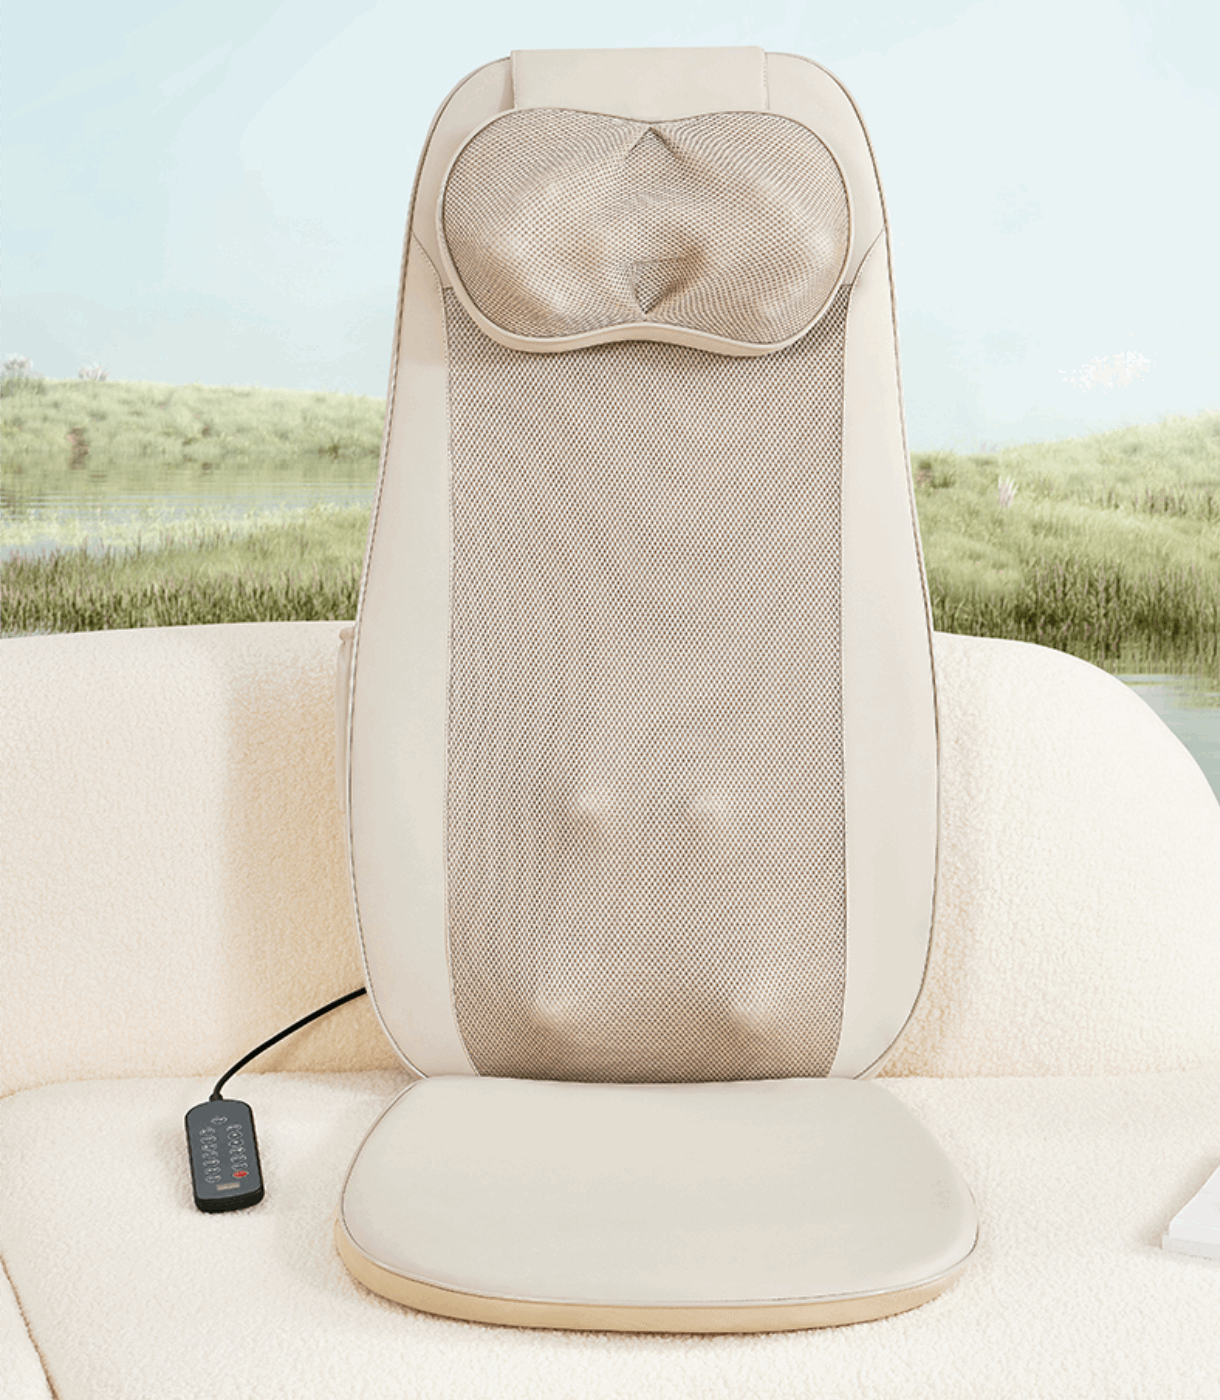 SpiriTouch Chair Massage Cushion